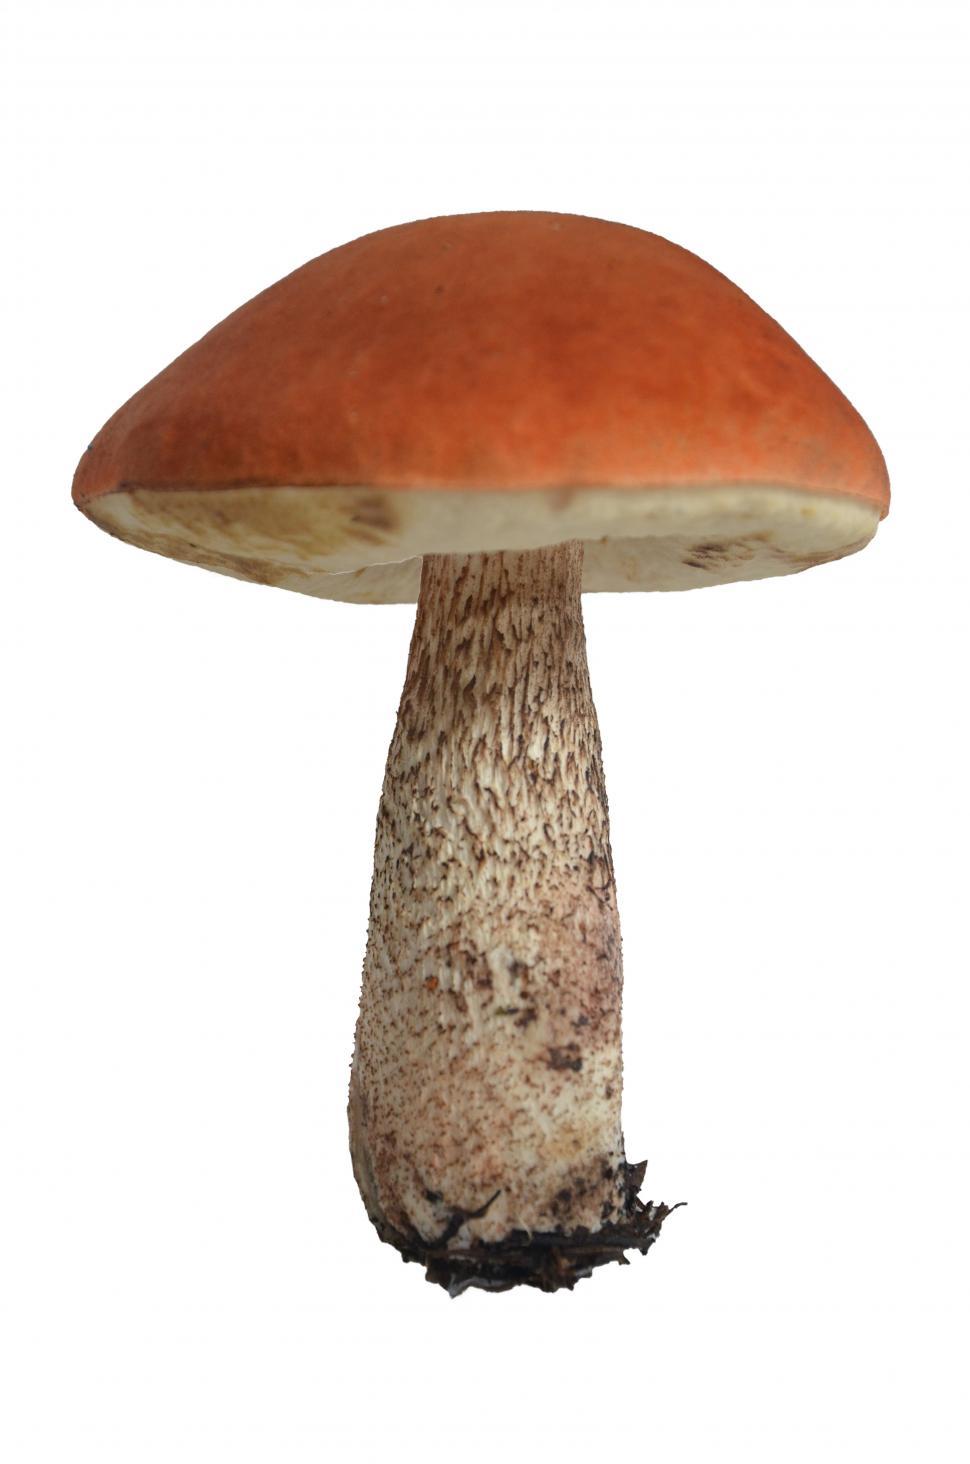 Free Image of Mushroom isolated 